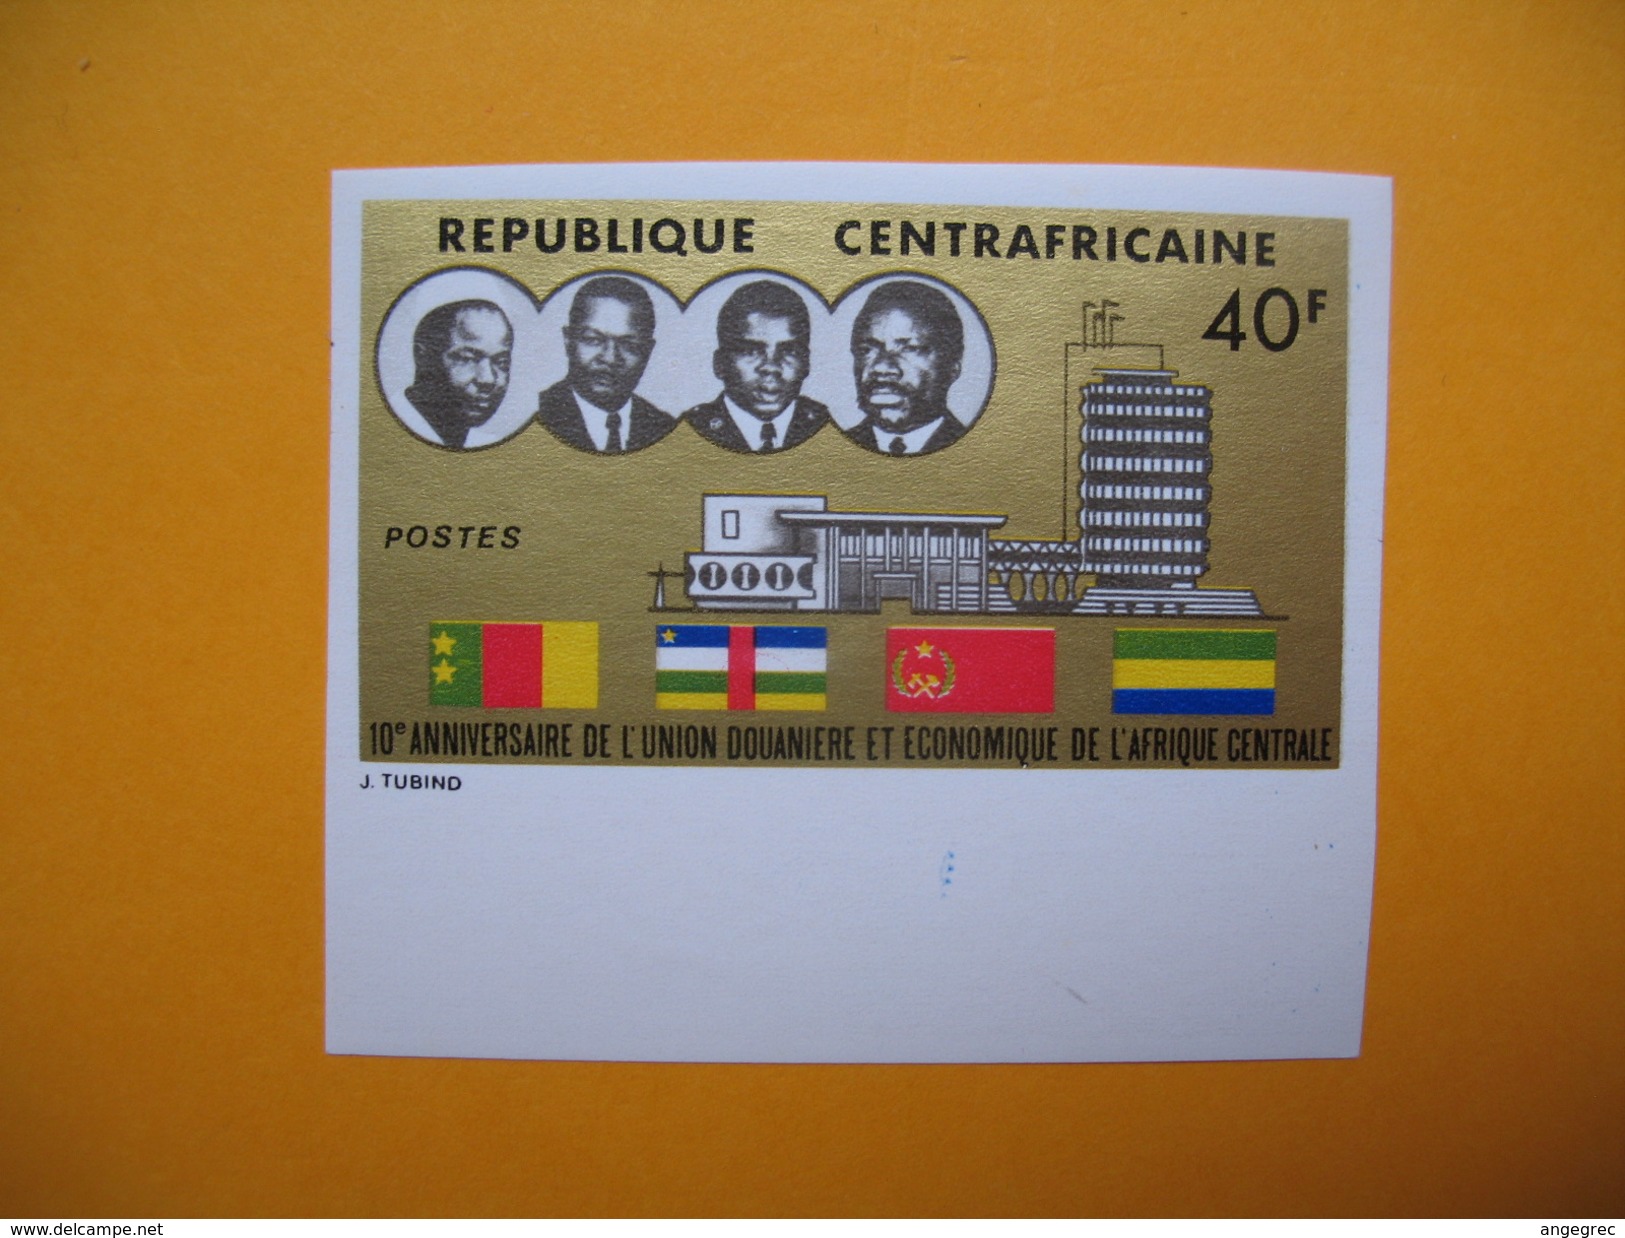 Timbre Non Dentelé  N° 221  10 ème Anniversaire De L'Union Douanère  1974 - Centrafricaine (République)